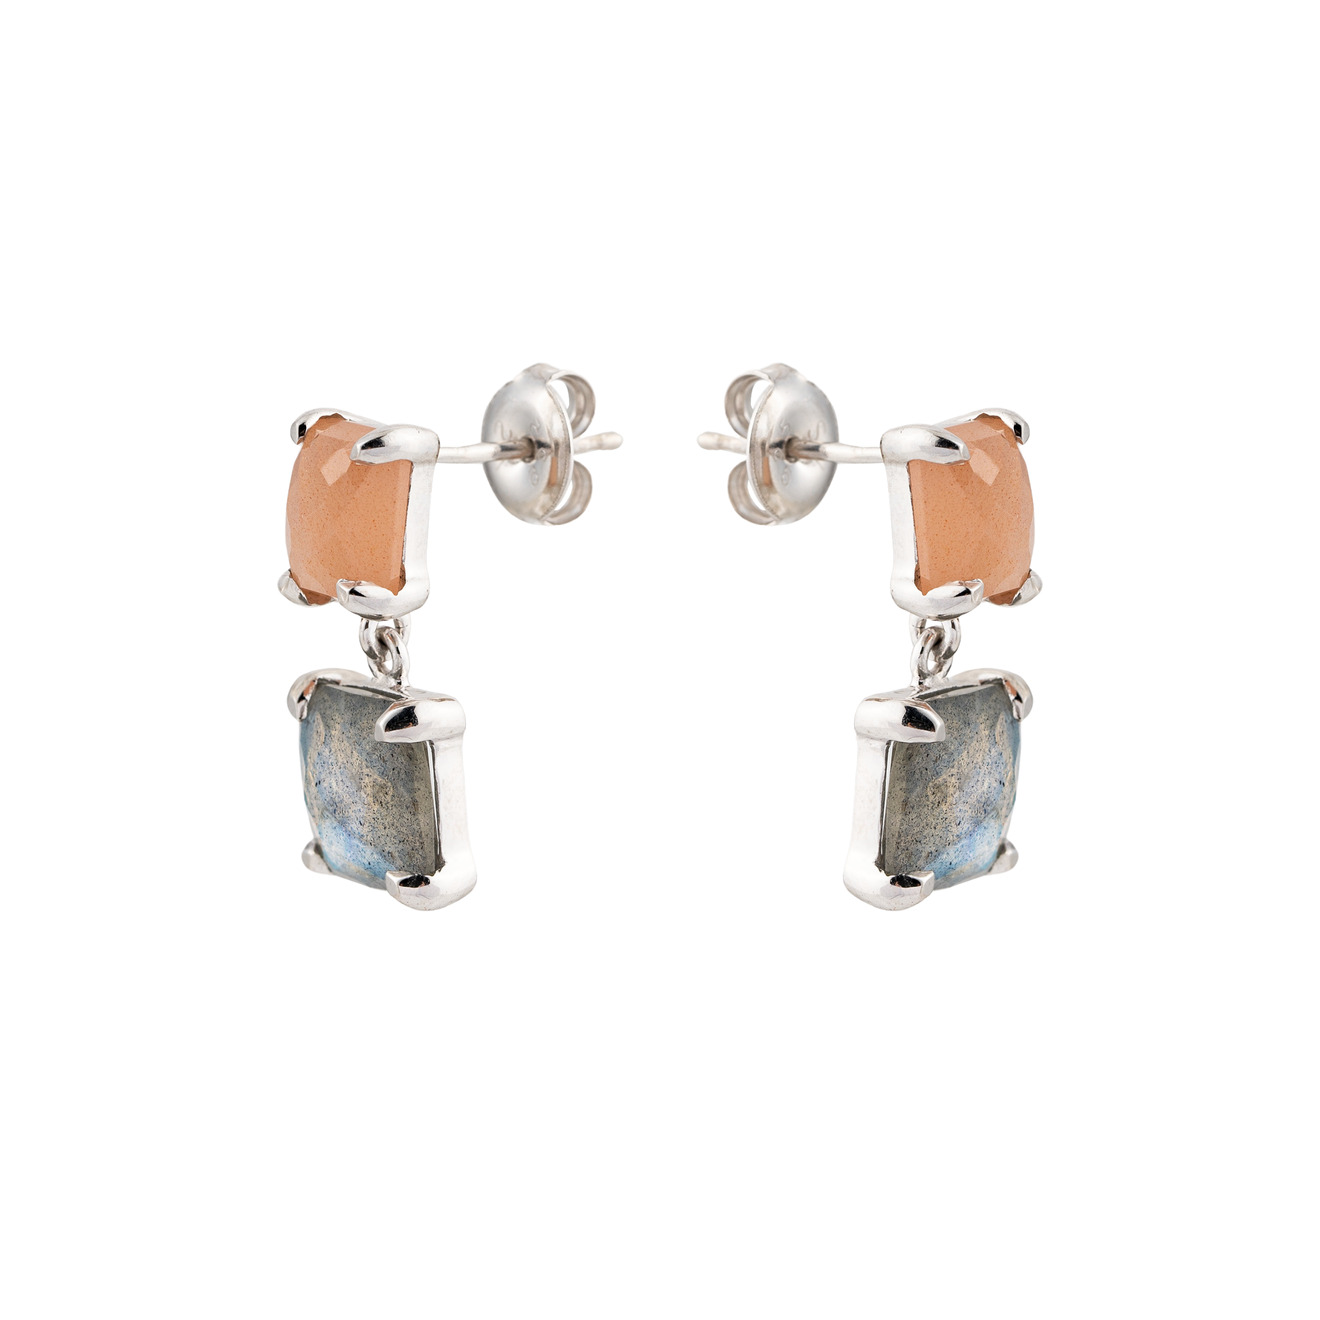 Wisteria Gems Серебряные серьги из двух квадратных камней лабрадорита и персикового лунного камня